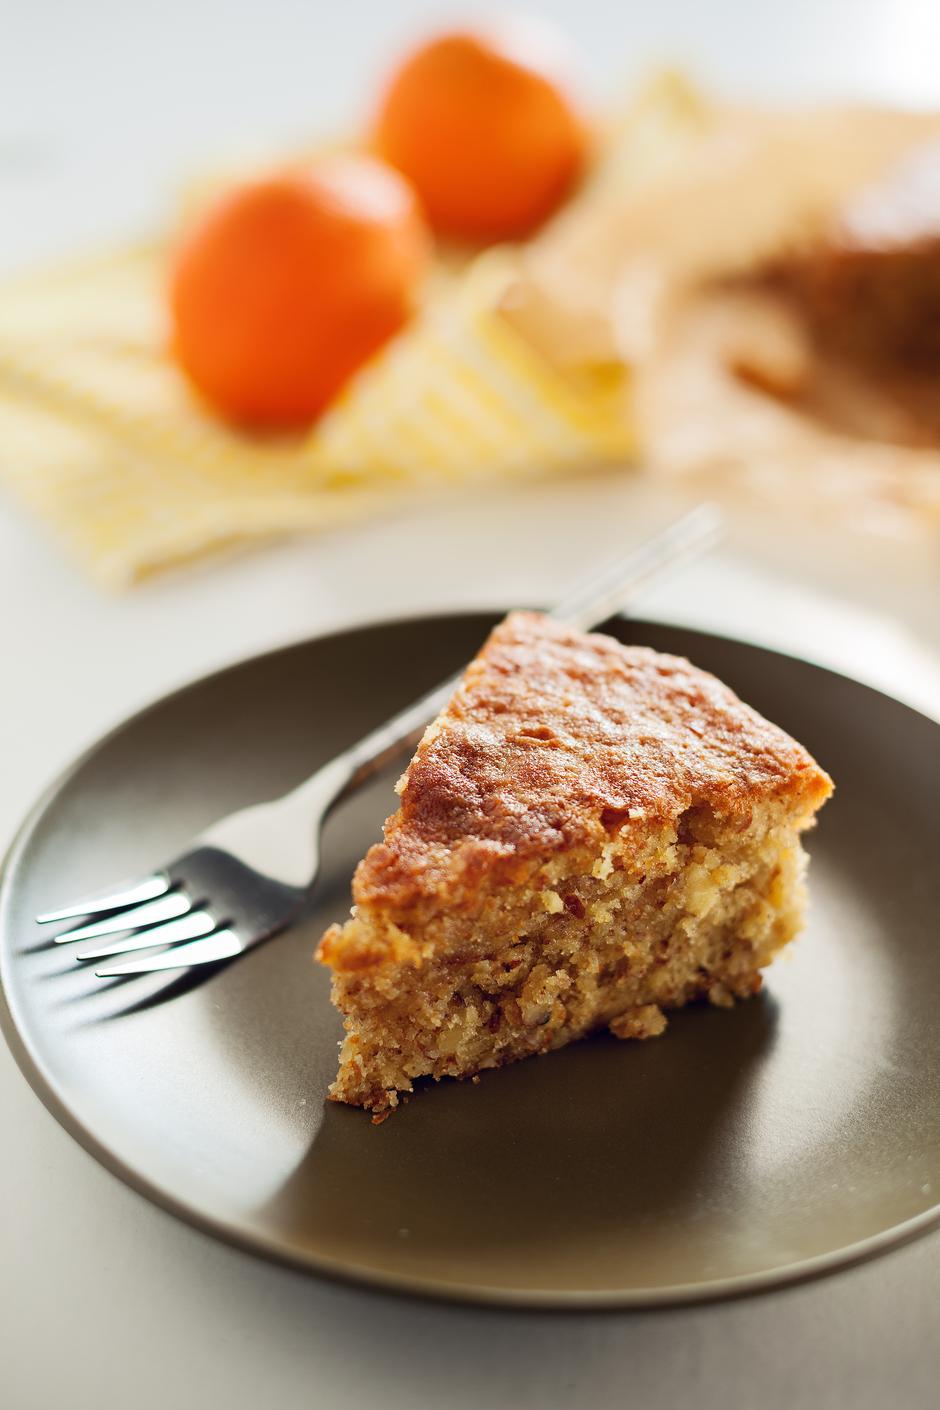 torta s narančama | Author: Danijel Berković/PIXSELL